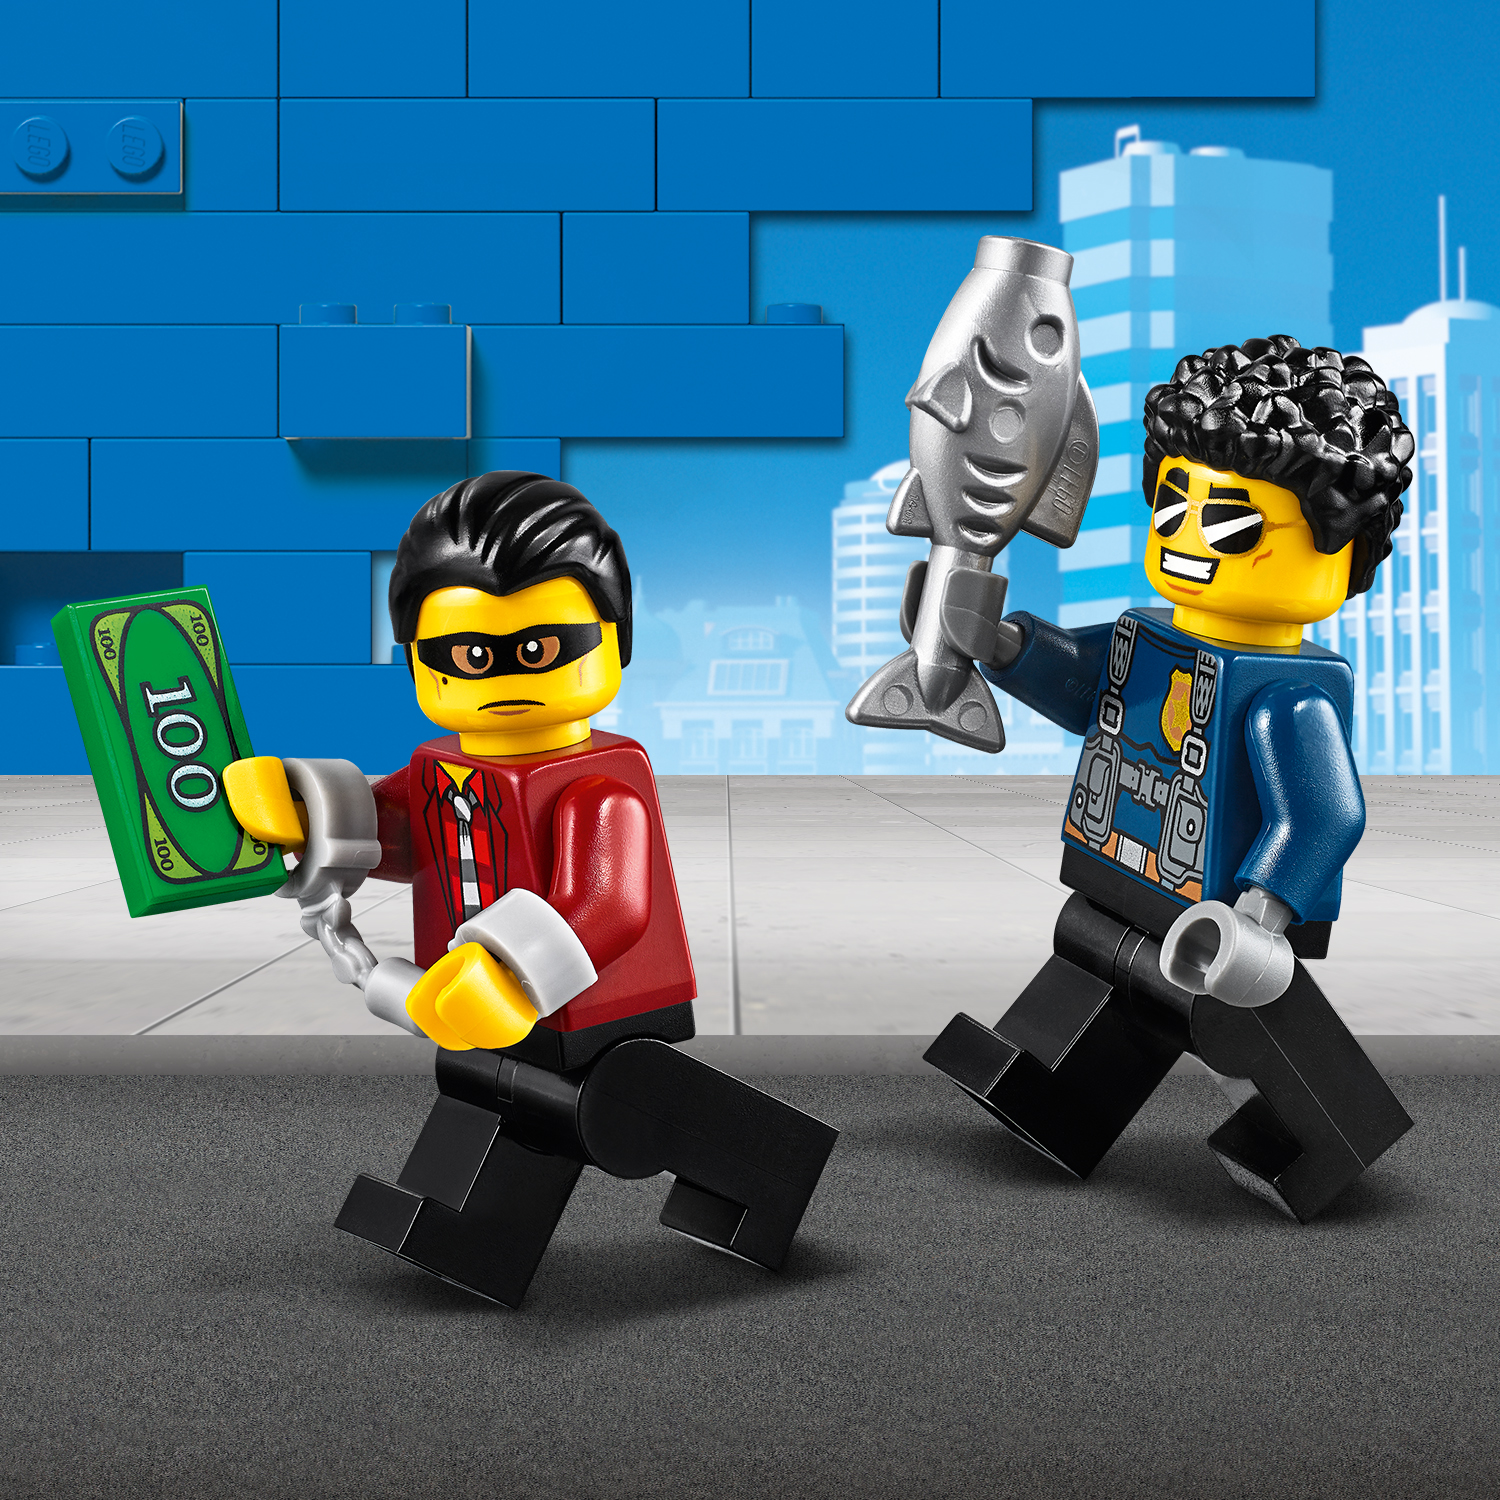 Hrdinové ze seriálu LEGO® City Adventures